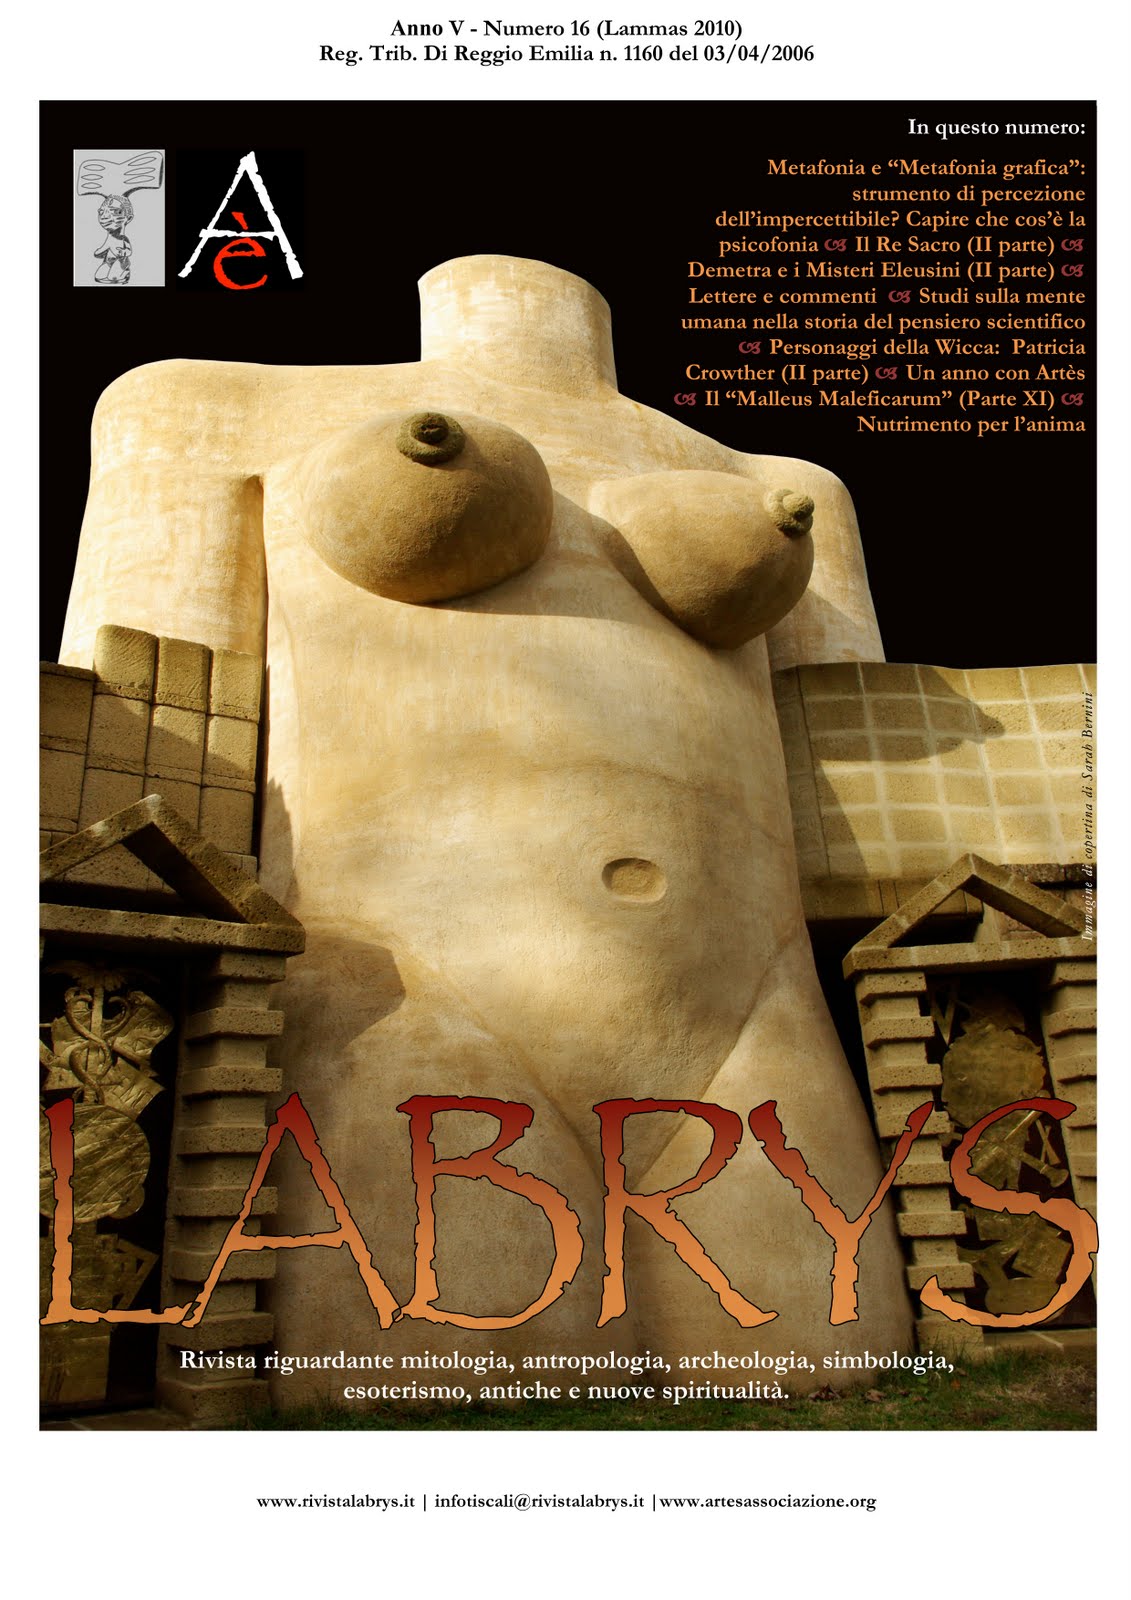 Copertina rivista Labrys 16